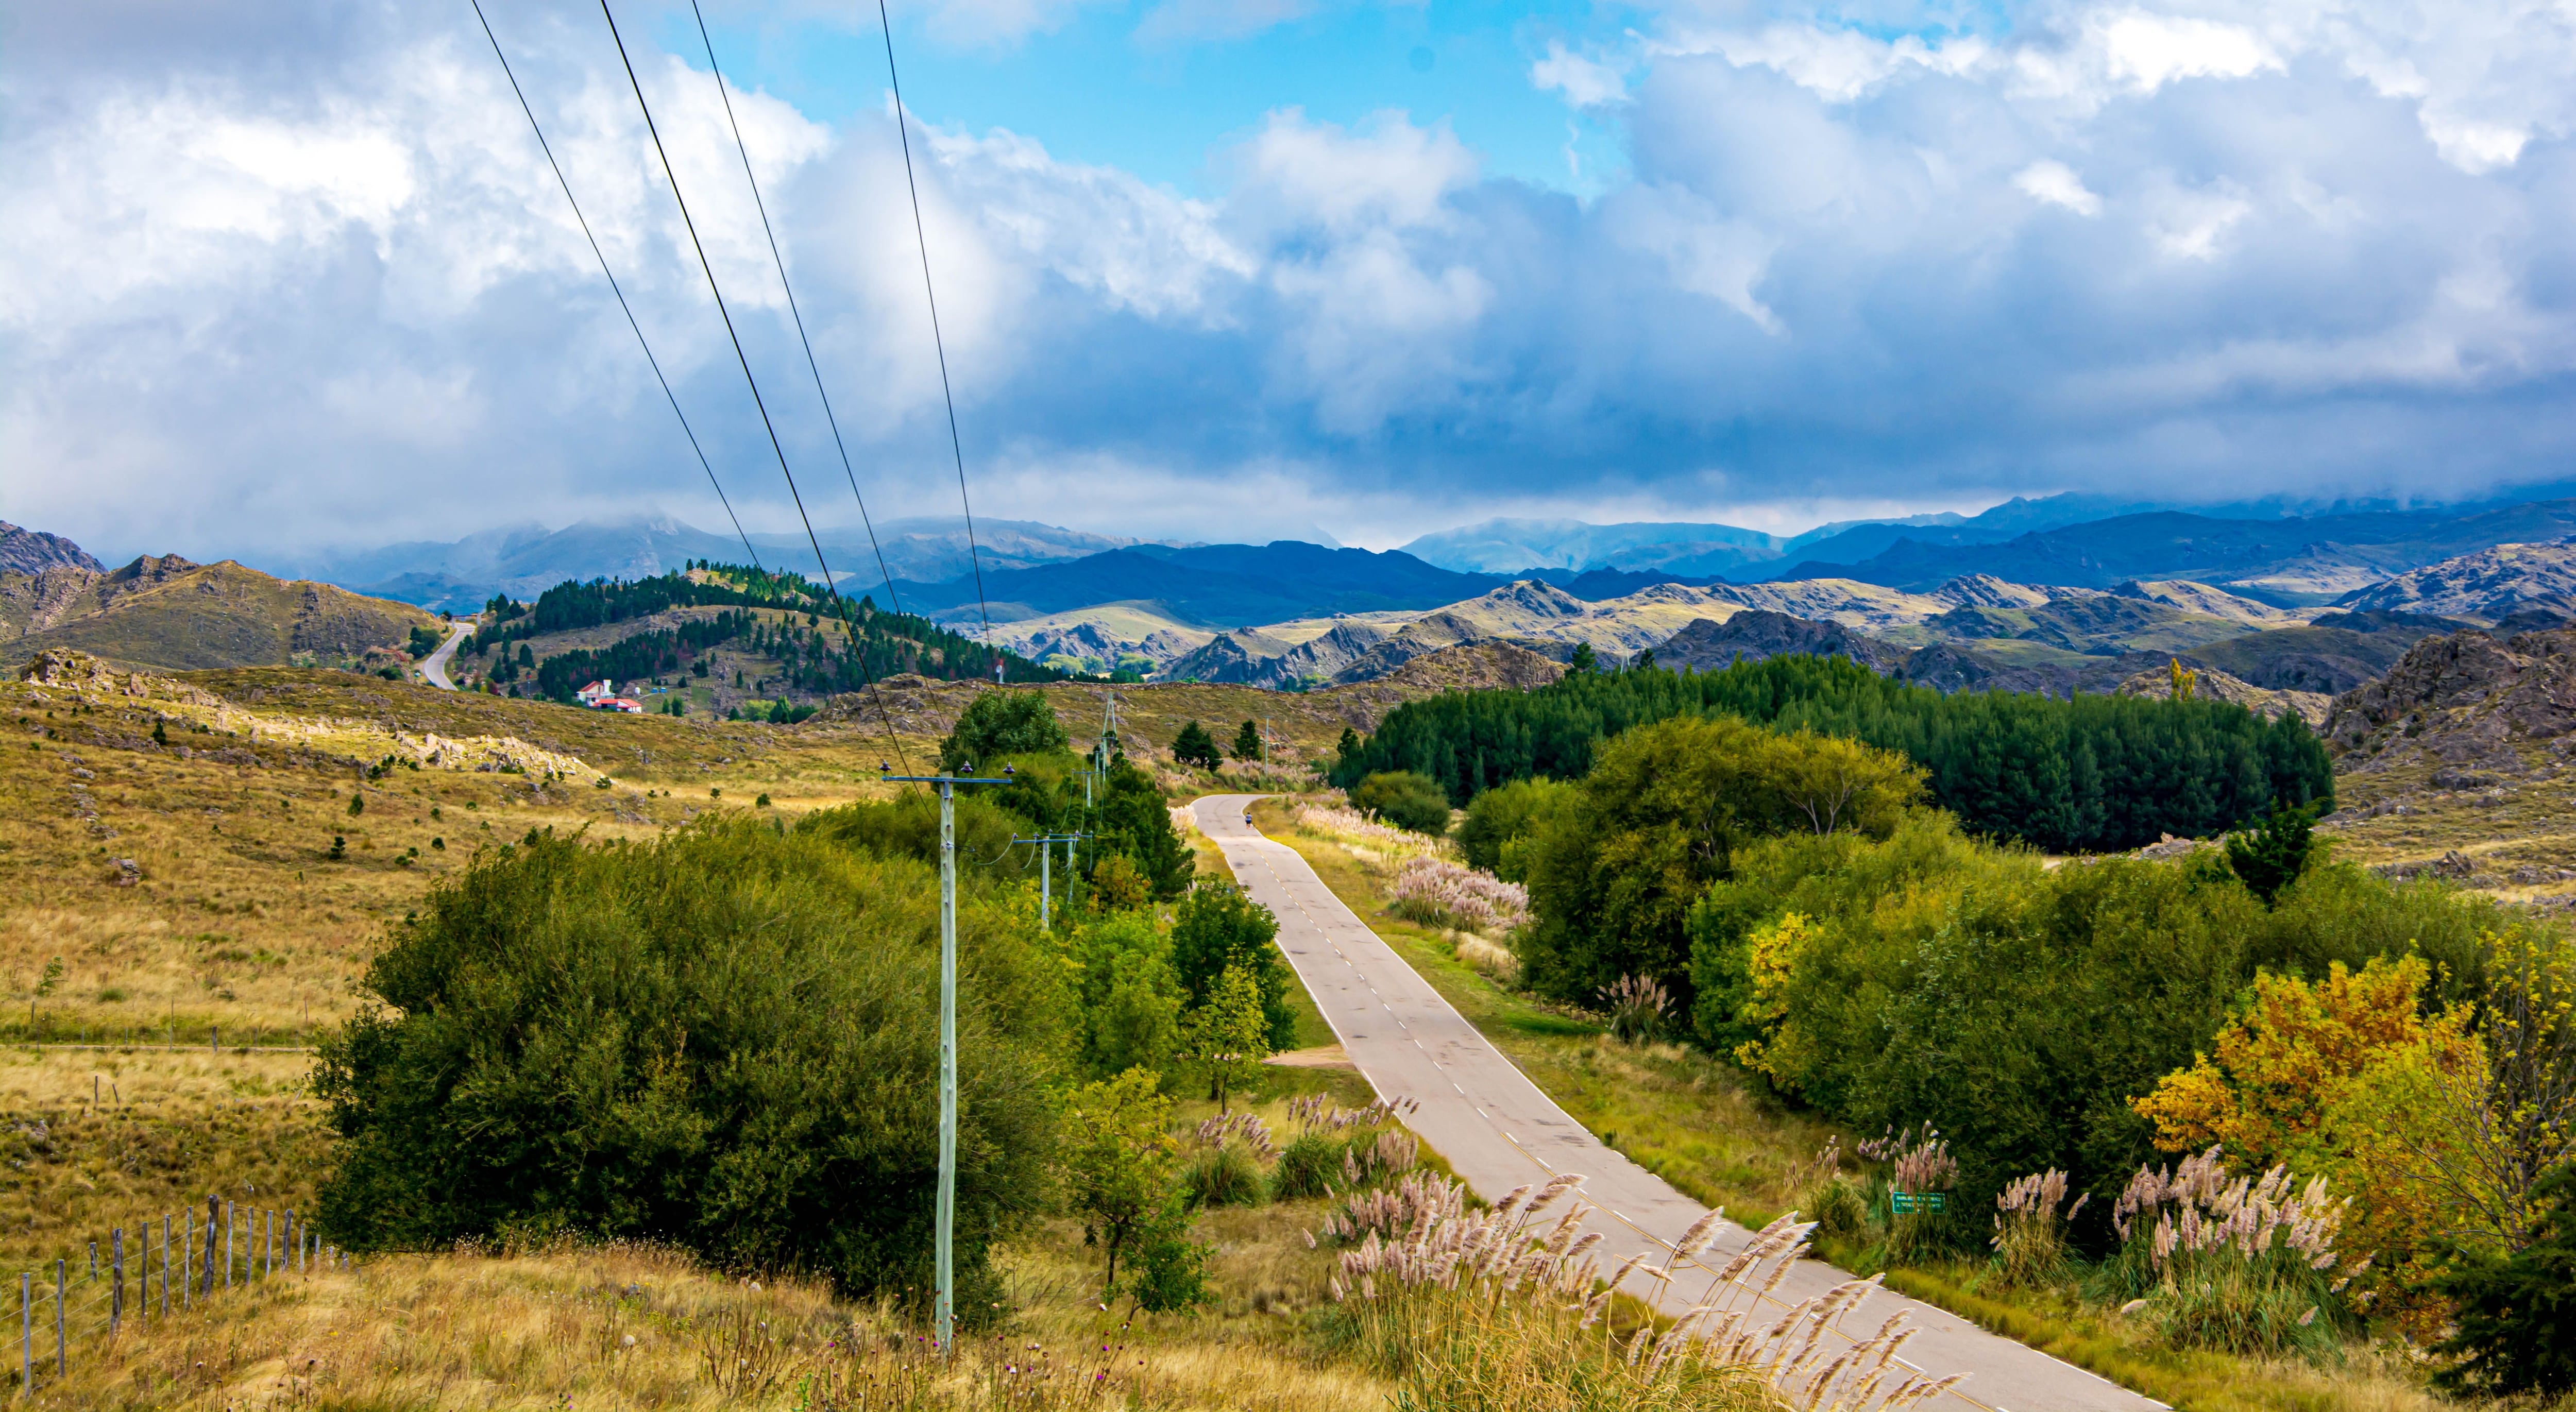 Una vista panorámica de la ruta que conduce al pueblo más alto de la región de Cuyo, rodeado de pintorescos paisajes